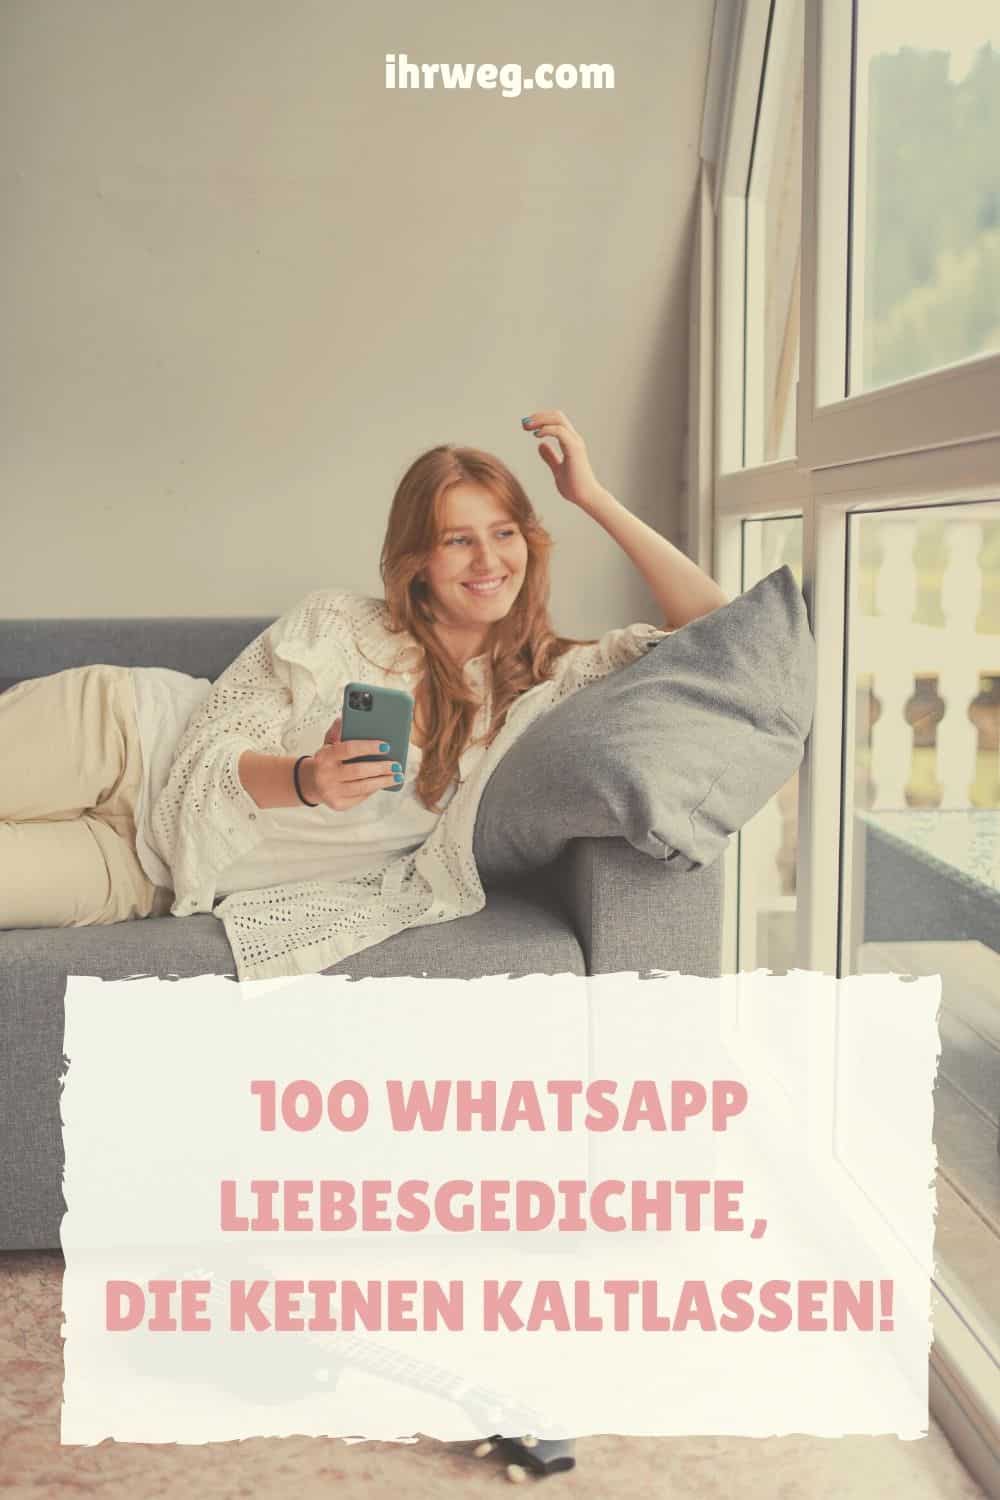 100 WhatsApp Liebesgedichte, Die Keinen Kaltlassen!